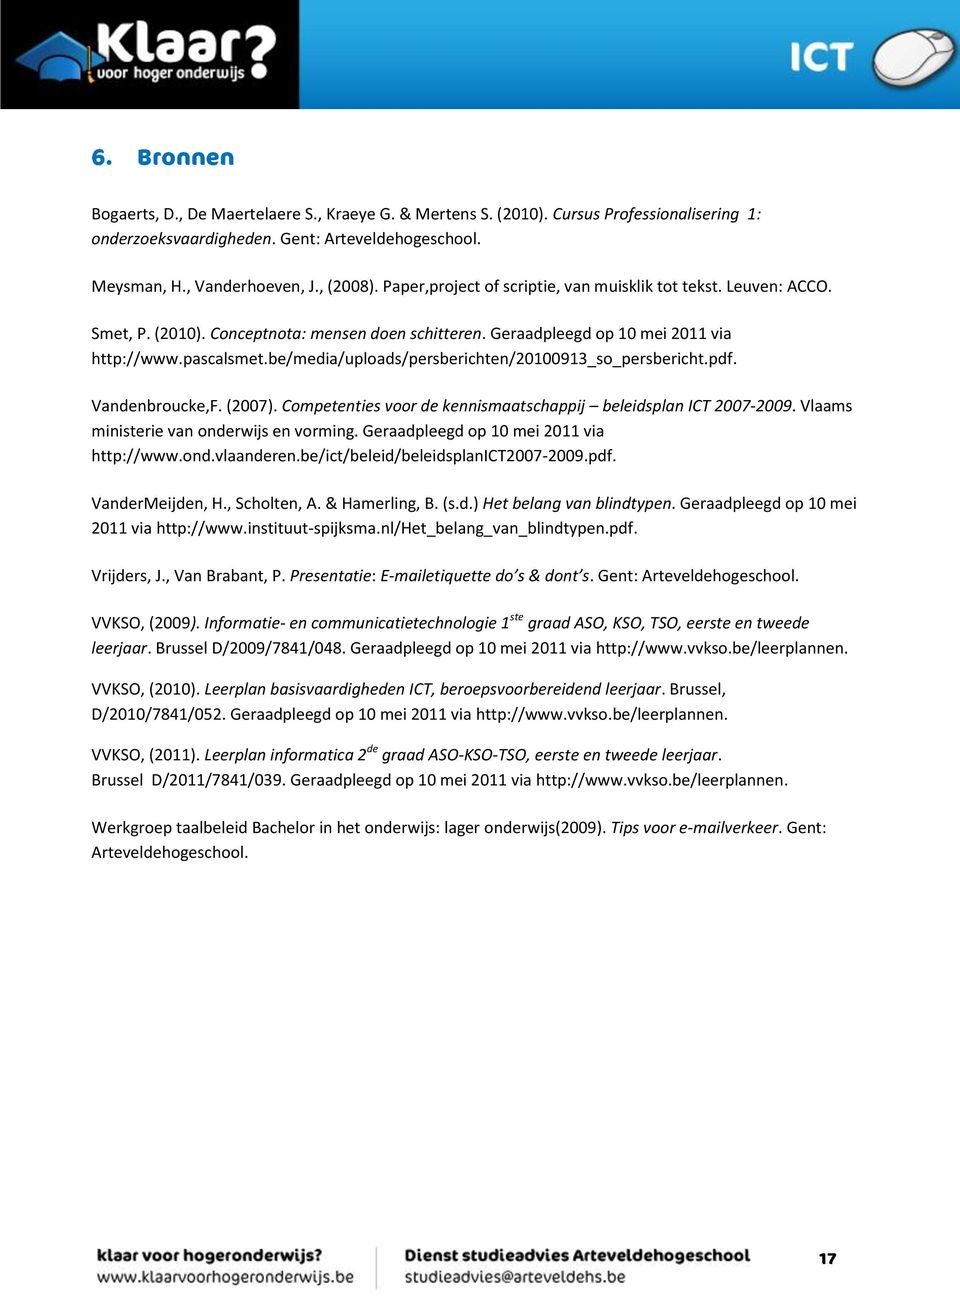 be/media/uploads/persberichten/20100913_so_persbericht.pdf. Vandenbroucke,F. (2007). Competenties voor de kennismaatschappij beleidsplan ICT 2007-2009. Vlaams ministerie van onderwijs en vorming.